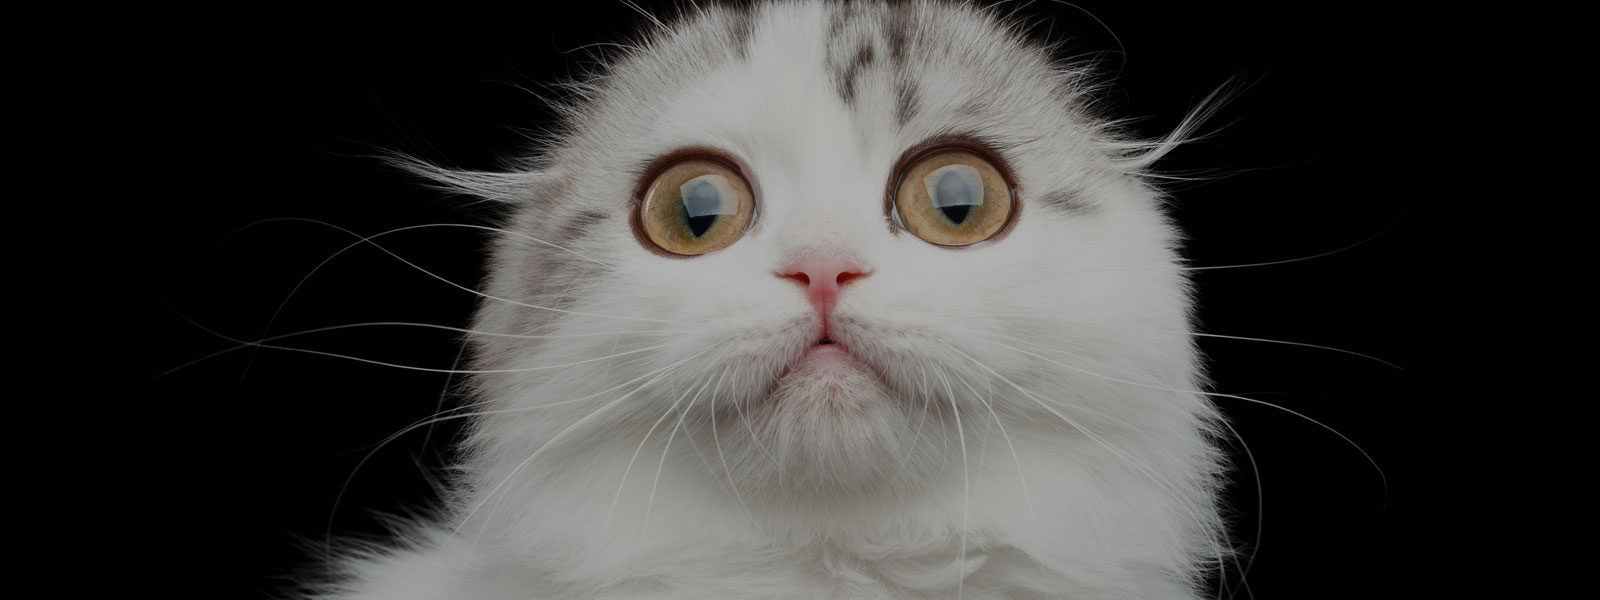 Why Do Cats Go Crazy for Catnip?